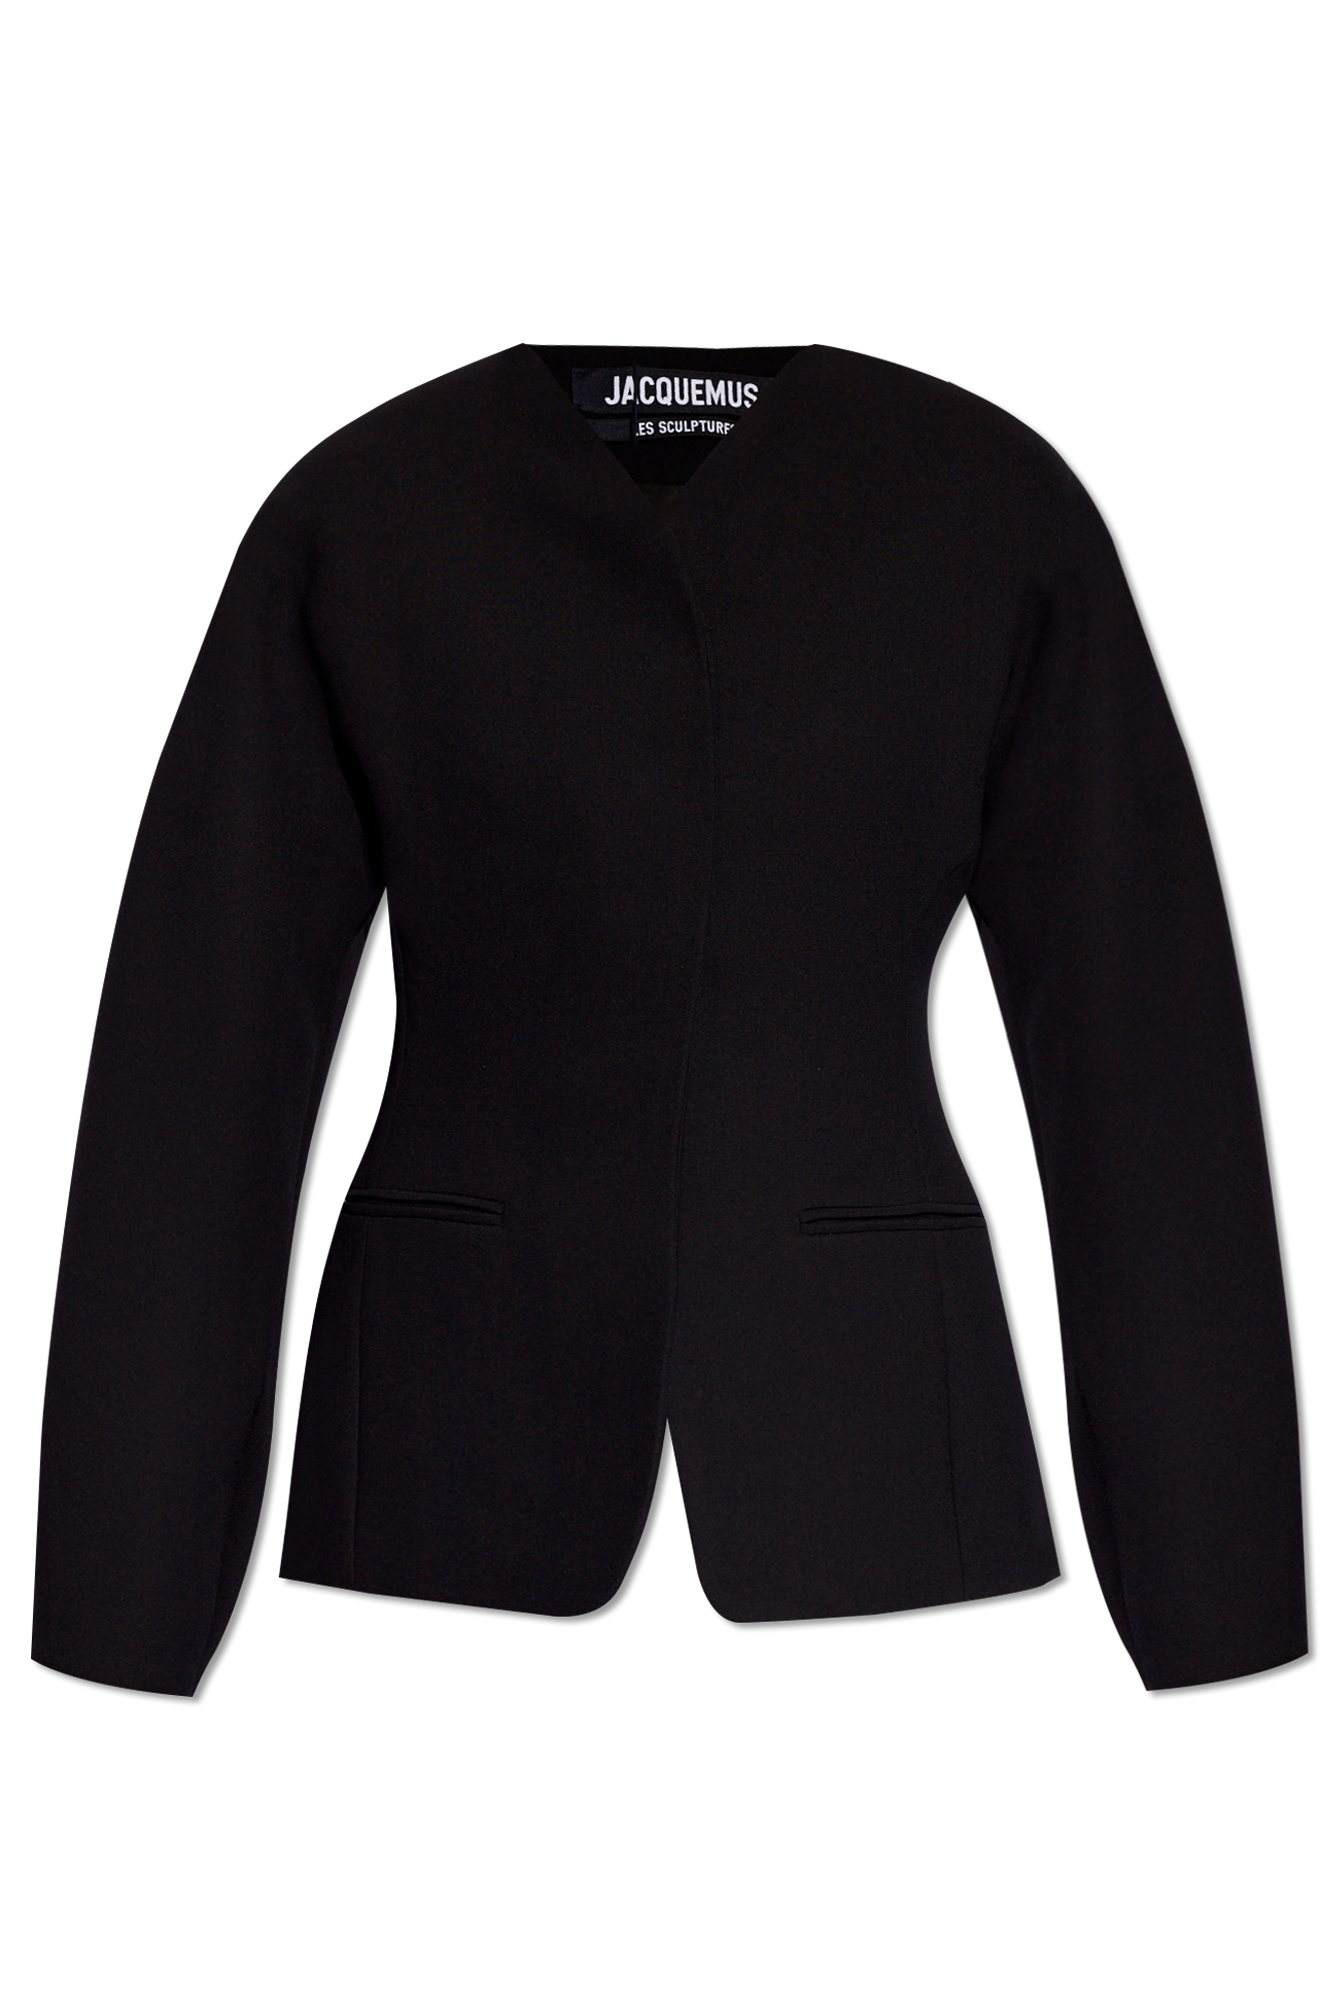 Jacquemus ‘Ovalo’ jacket